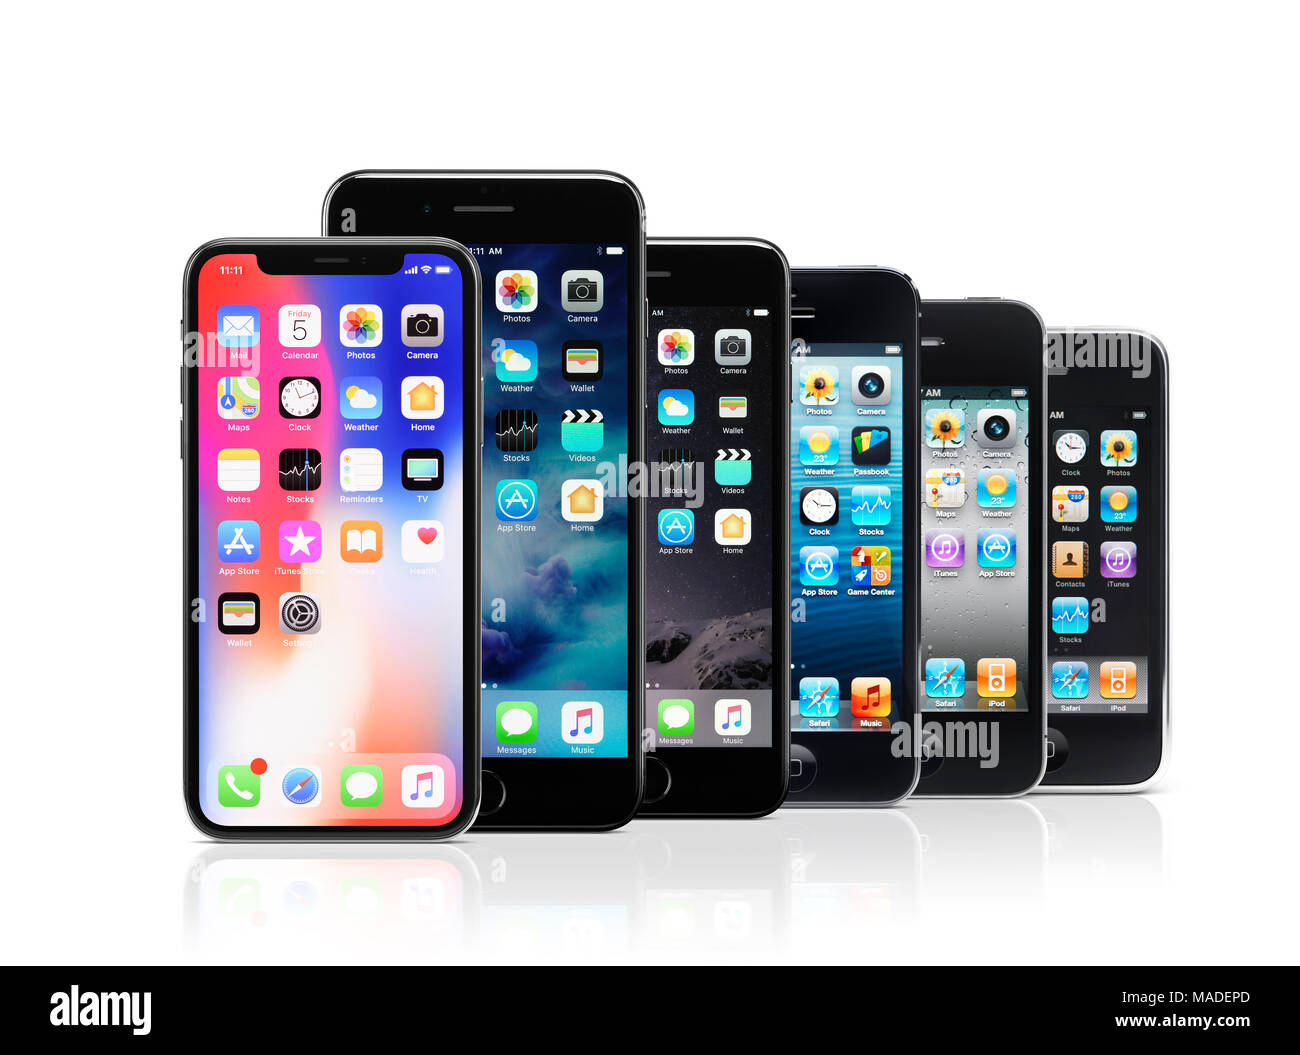 Licenza disponibile su MaximImages.com - linea Apple iPhone, iPhone X, 7 Plus, 7, 5s, 4, 3, dai modelli più recenti a quelli meno recenti dello smartphone precedente Foto Stock